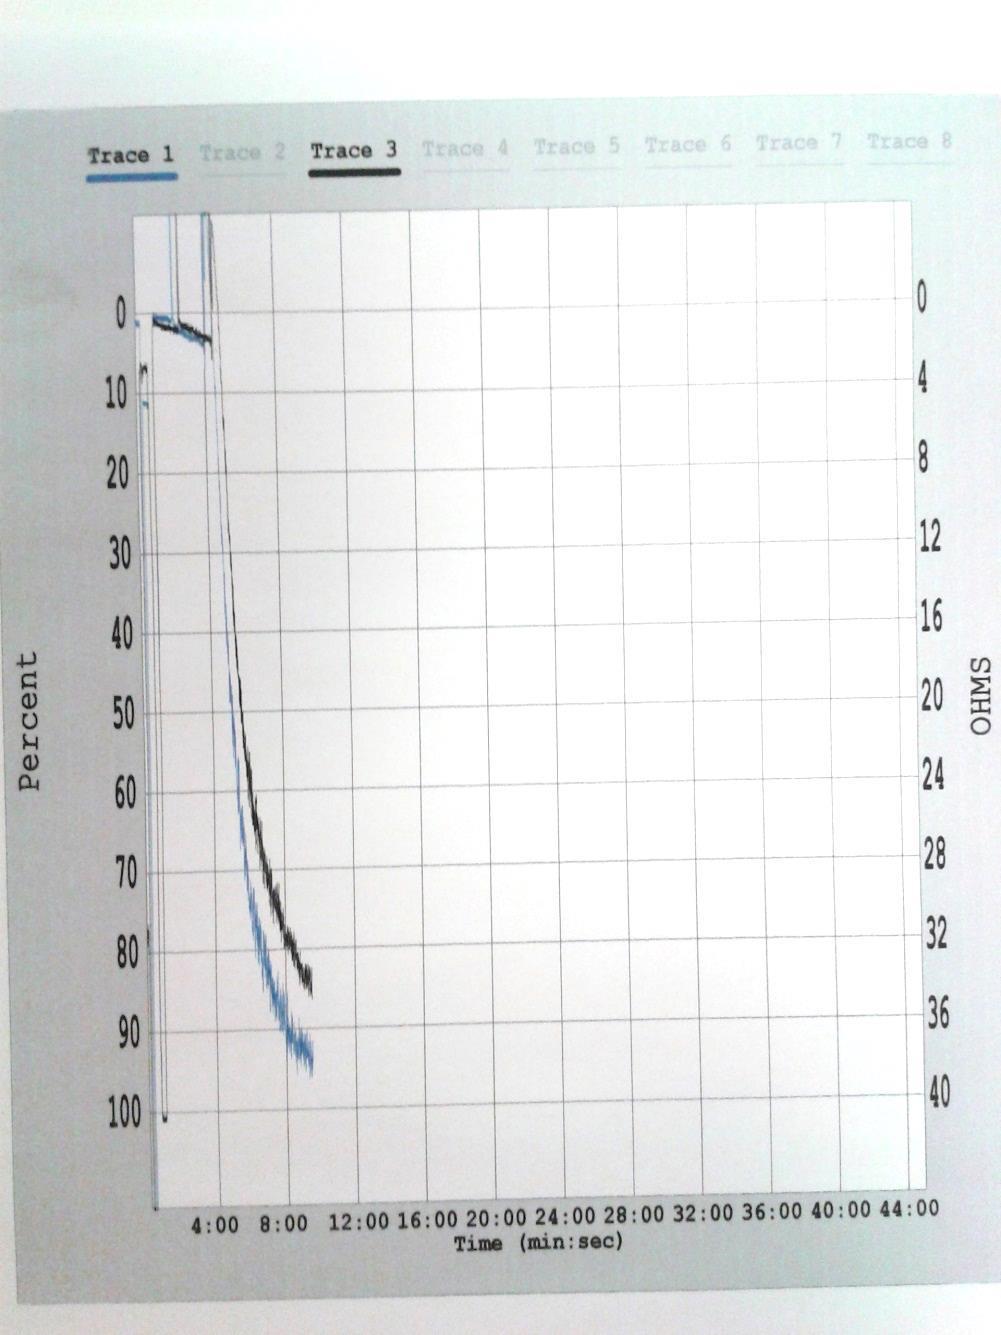 MRS-2179 (antagonist) Fig 3. De två olika kurvorna i grafen presenterar de två olika doserna av MRS-2179. Den svarta grafen motsvarar 1 μm och den blåa 20 μm ADP.